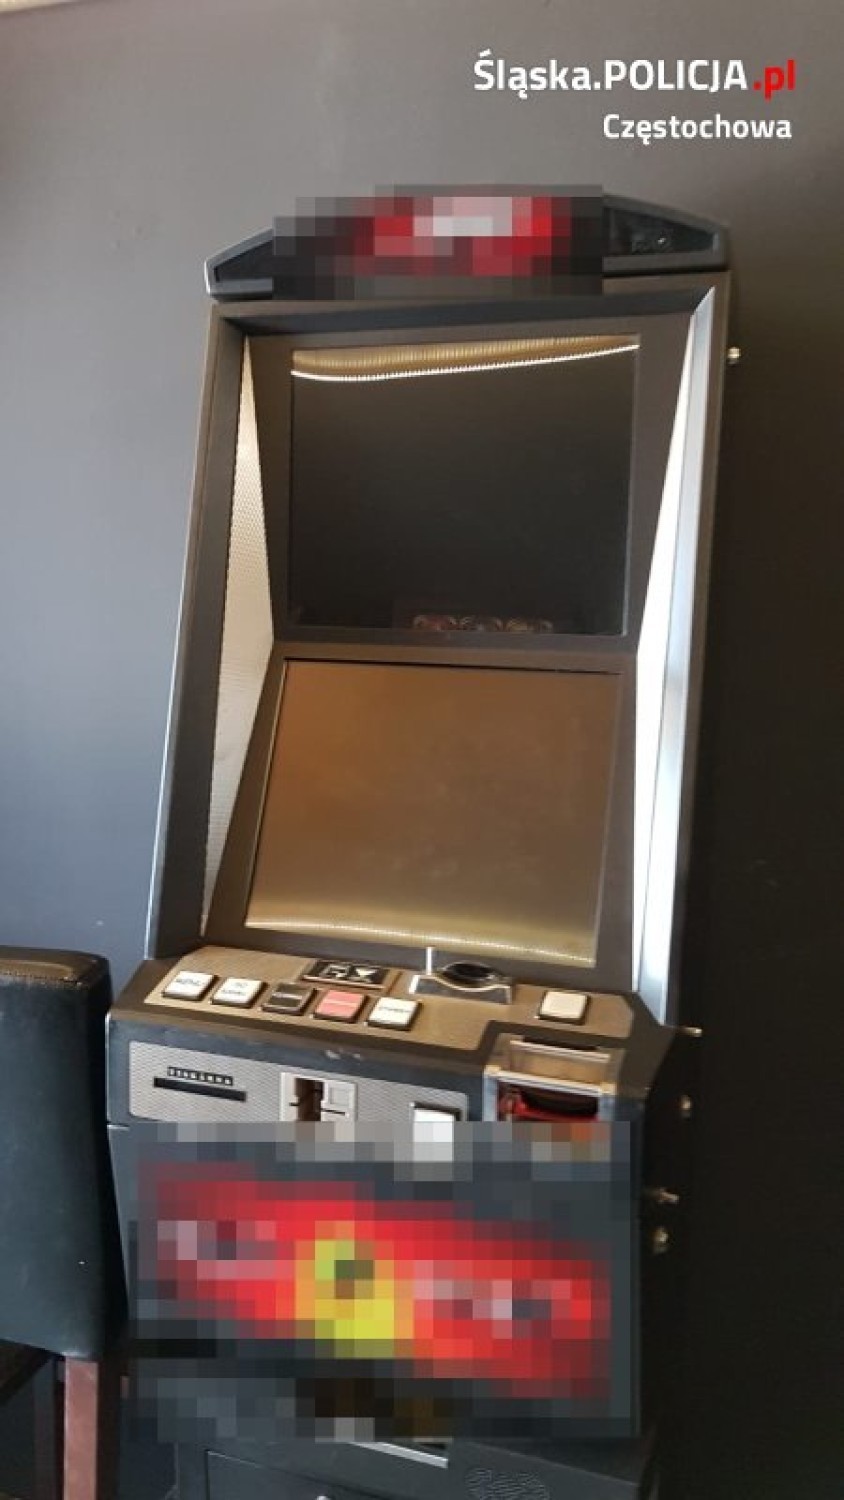 Częstochowa: Policja przejęła nielegalne automaty do gier. Za hazard grozi wysoka kara finansowa i więzienie